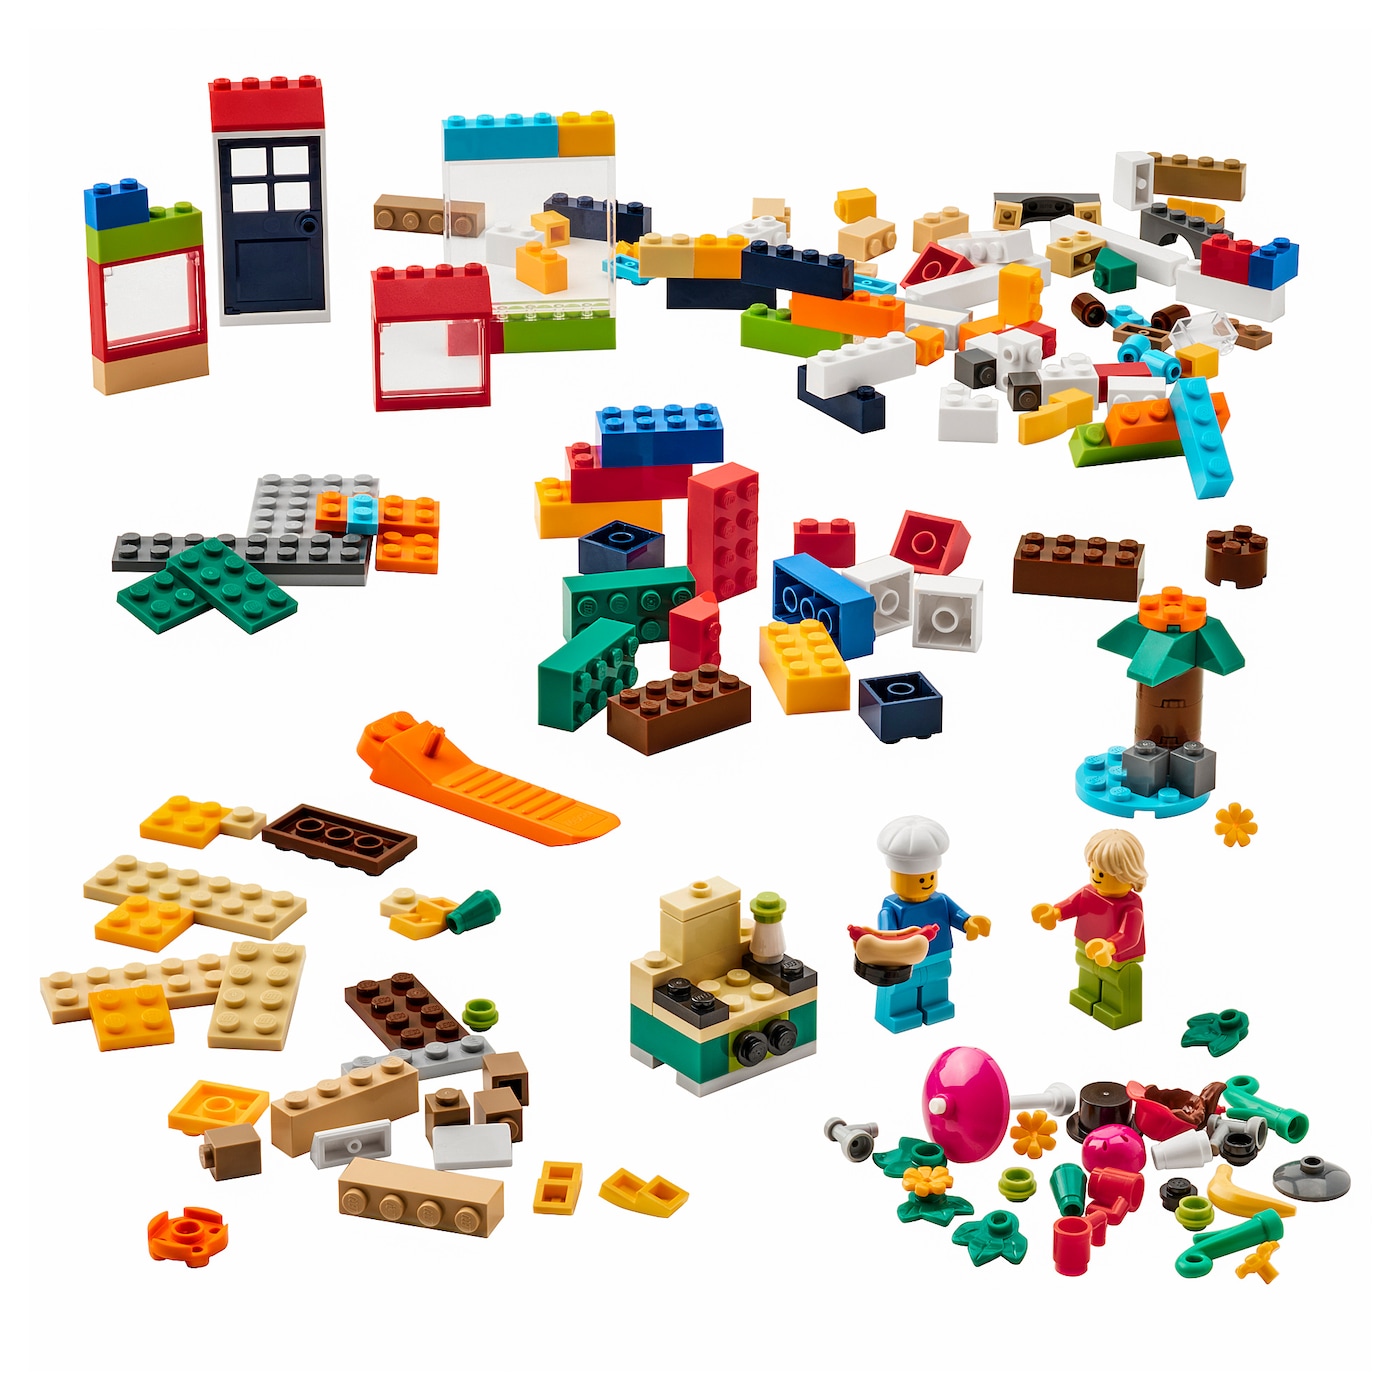 bygglek-caja-201-ladrillos-lego-r-colores-variados_0915480_pe784779_s5.jpg